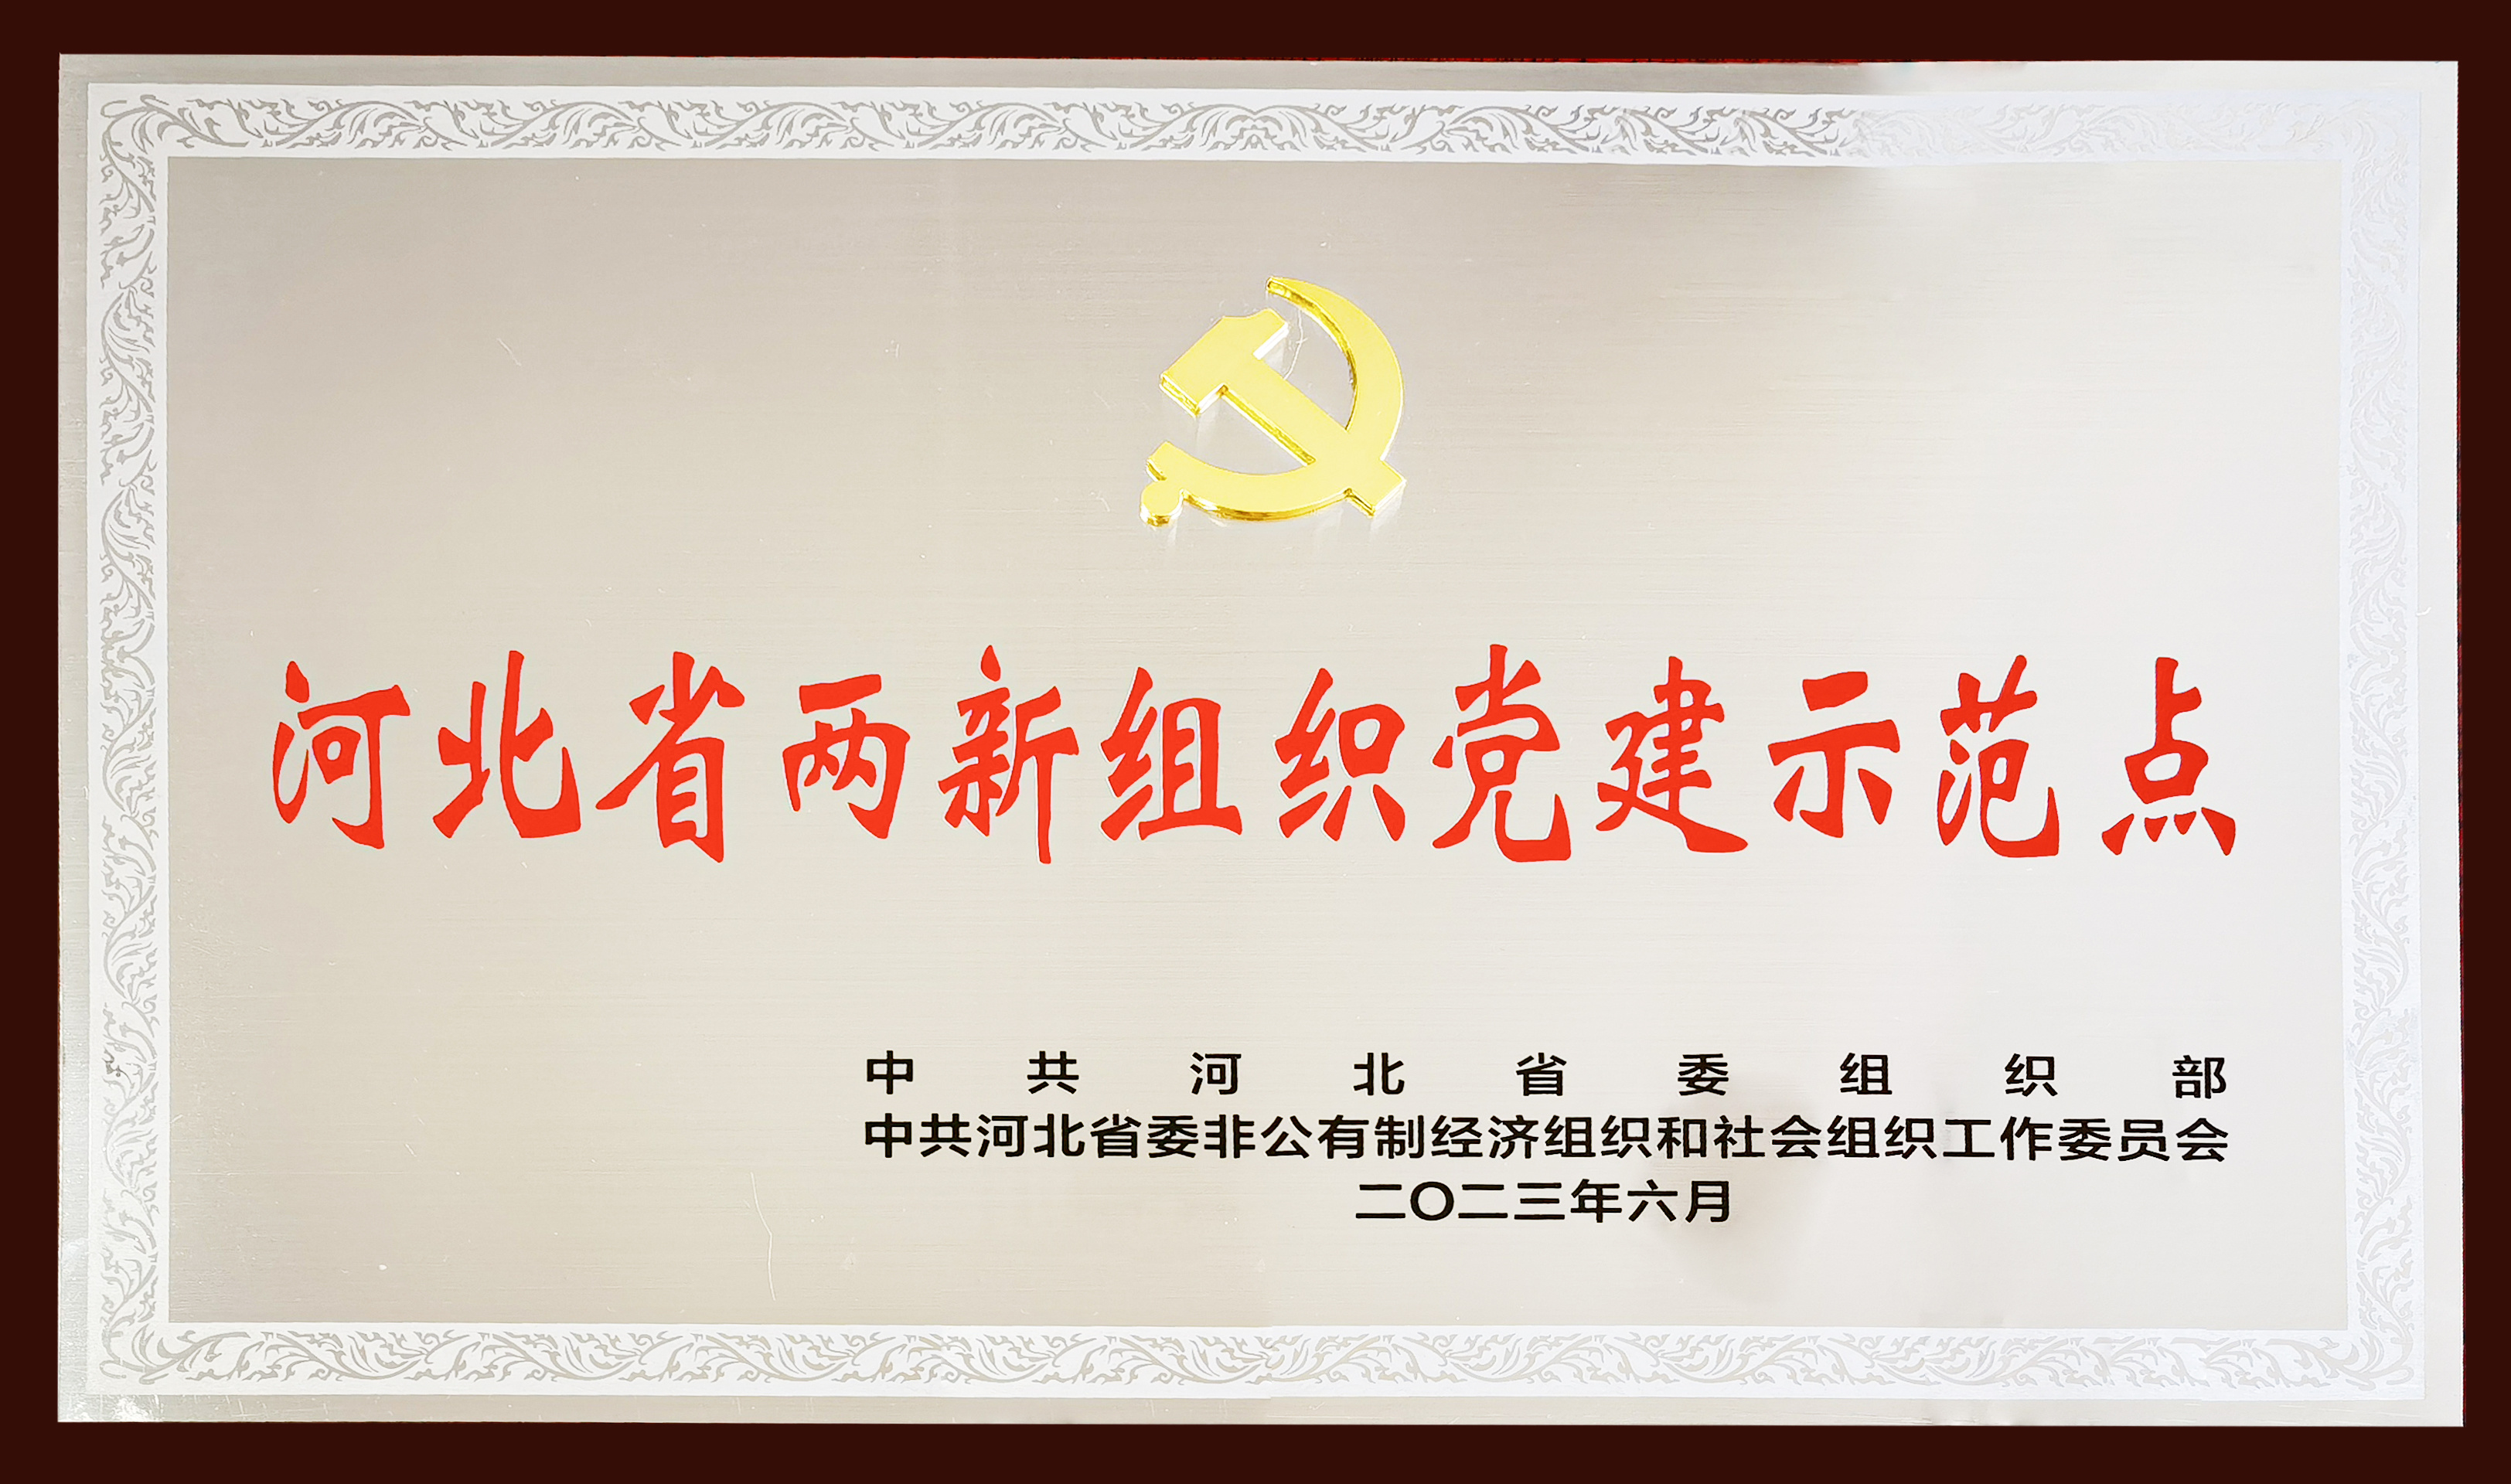 衡橡科技党委荣膺 —— 河北省首批两新组织党建示范点